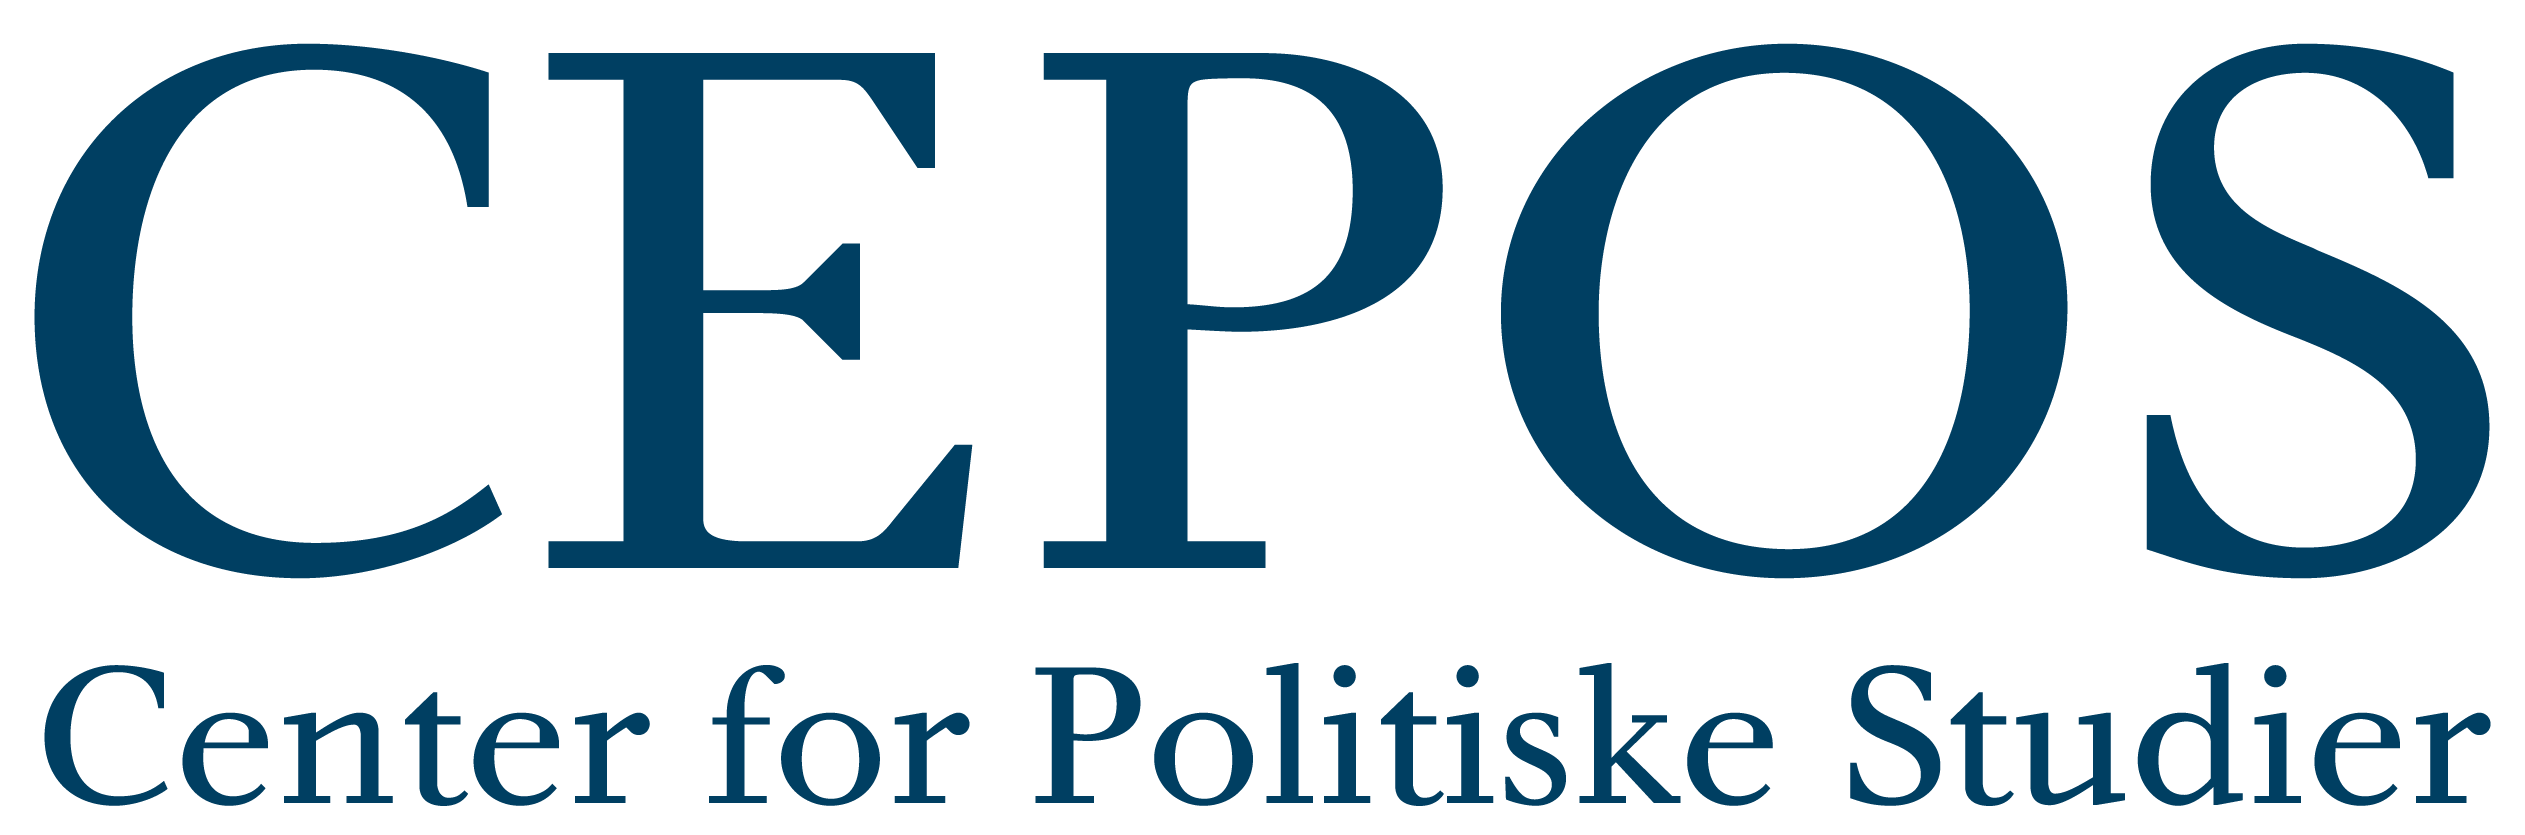 CEPOS_Center_for_Politiske_Studier_blå_FOOTER